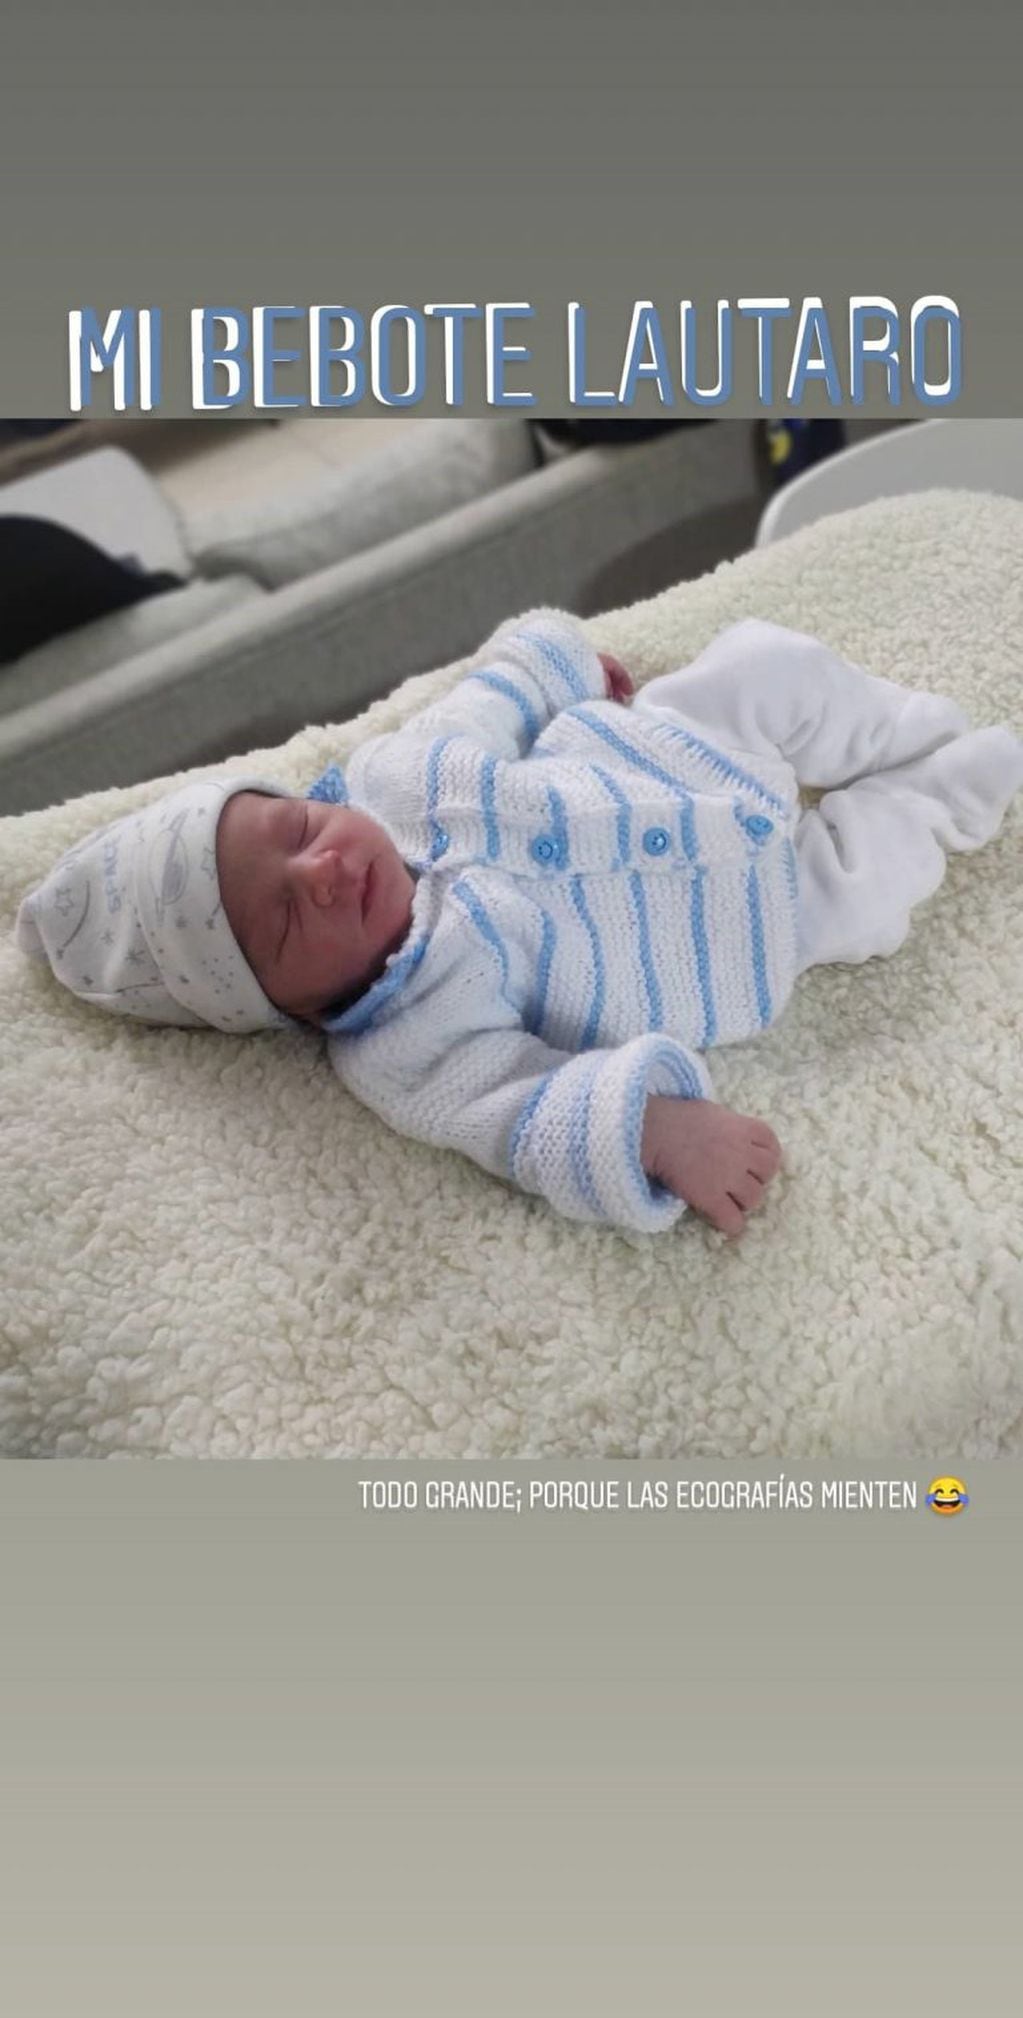 La madre de Lautaro celebró el nacimiento con una publicación en su cuenta de Instagram. (@prietodalilabelen)